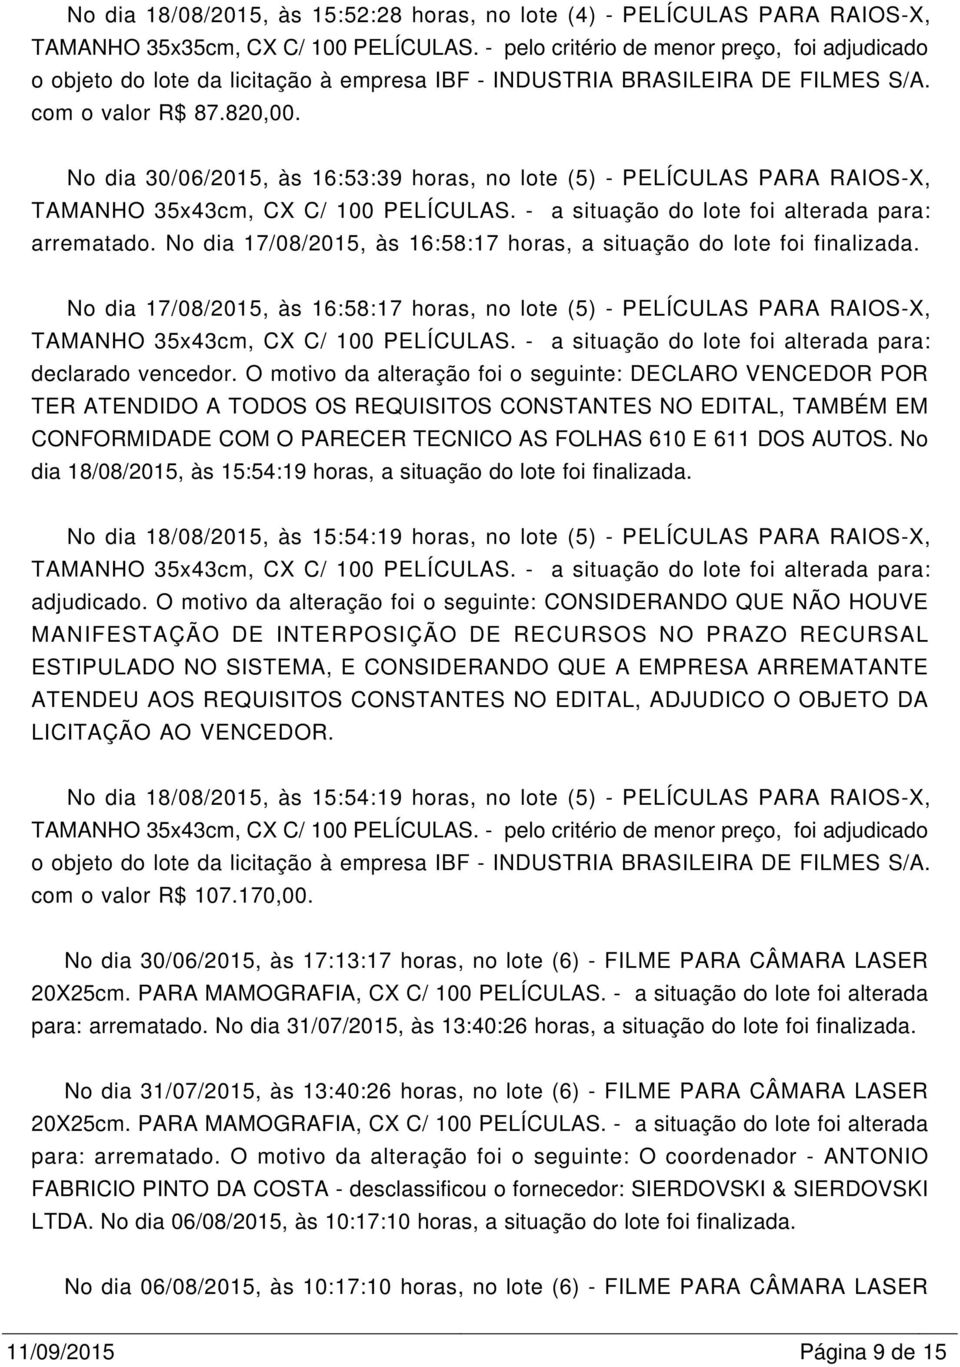 No dia 30/06/2015, às 16:53:39 horas, no lote (5) - PELÍCULAS PARA RAIOS-X, TAMANHO 35x43cm, CX C/ 100 PELÍCULAS. - a situação do lote foi alterada para: arrematado.